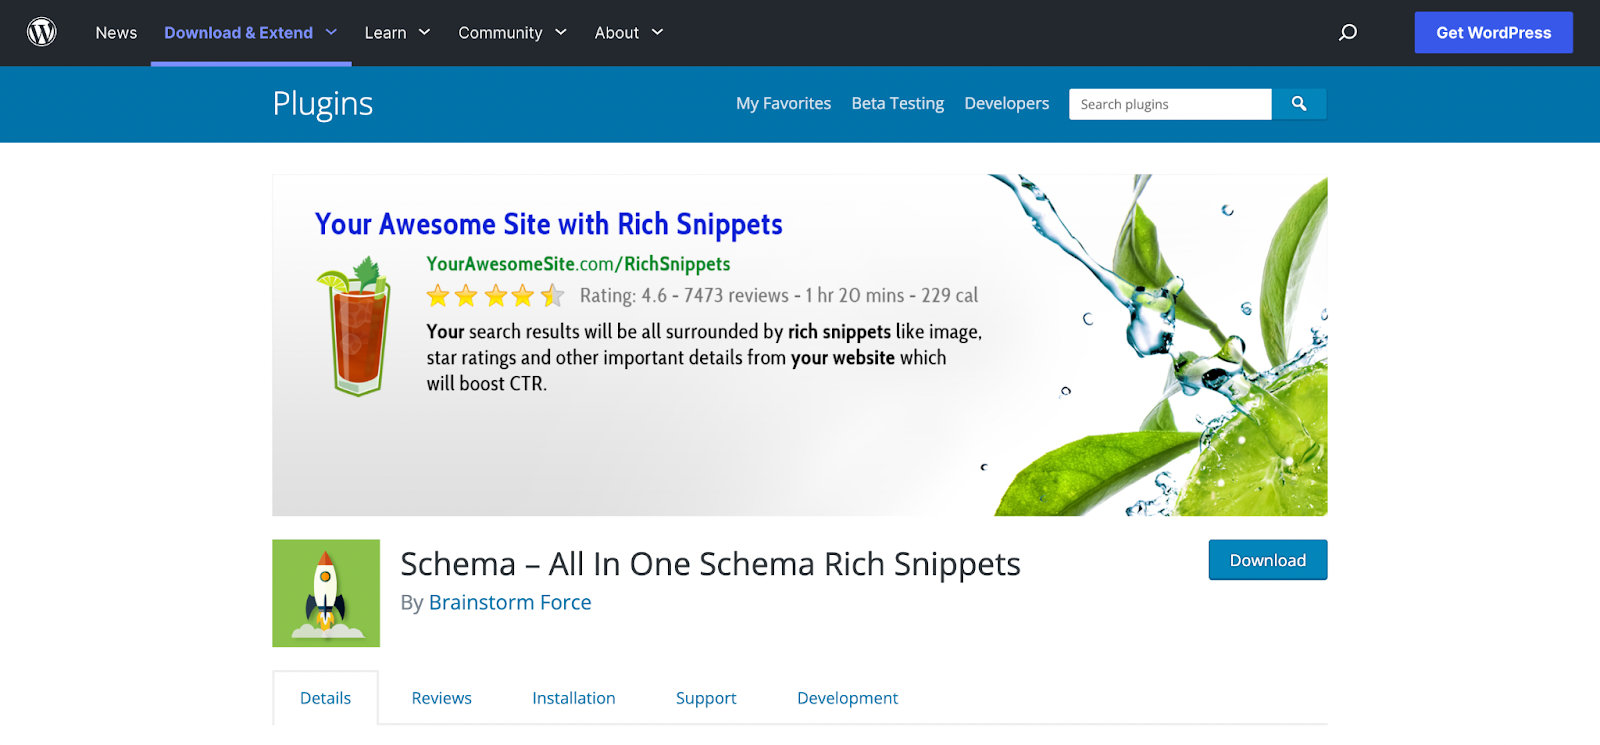 Schema - All In One Schema Rich Snippets